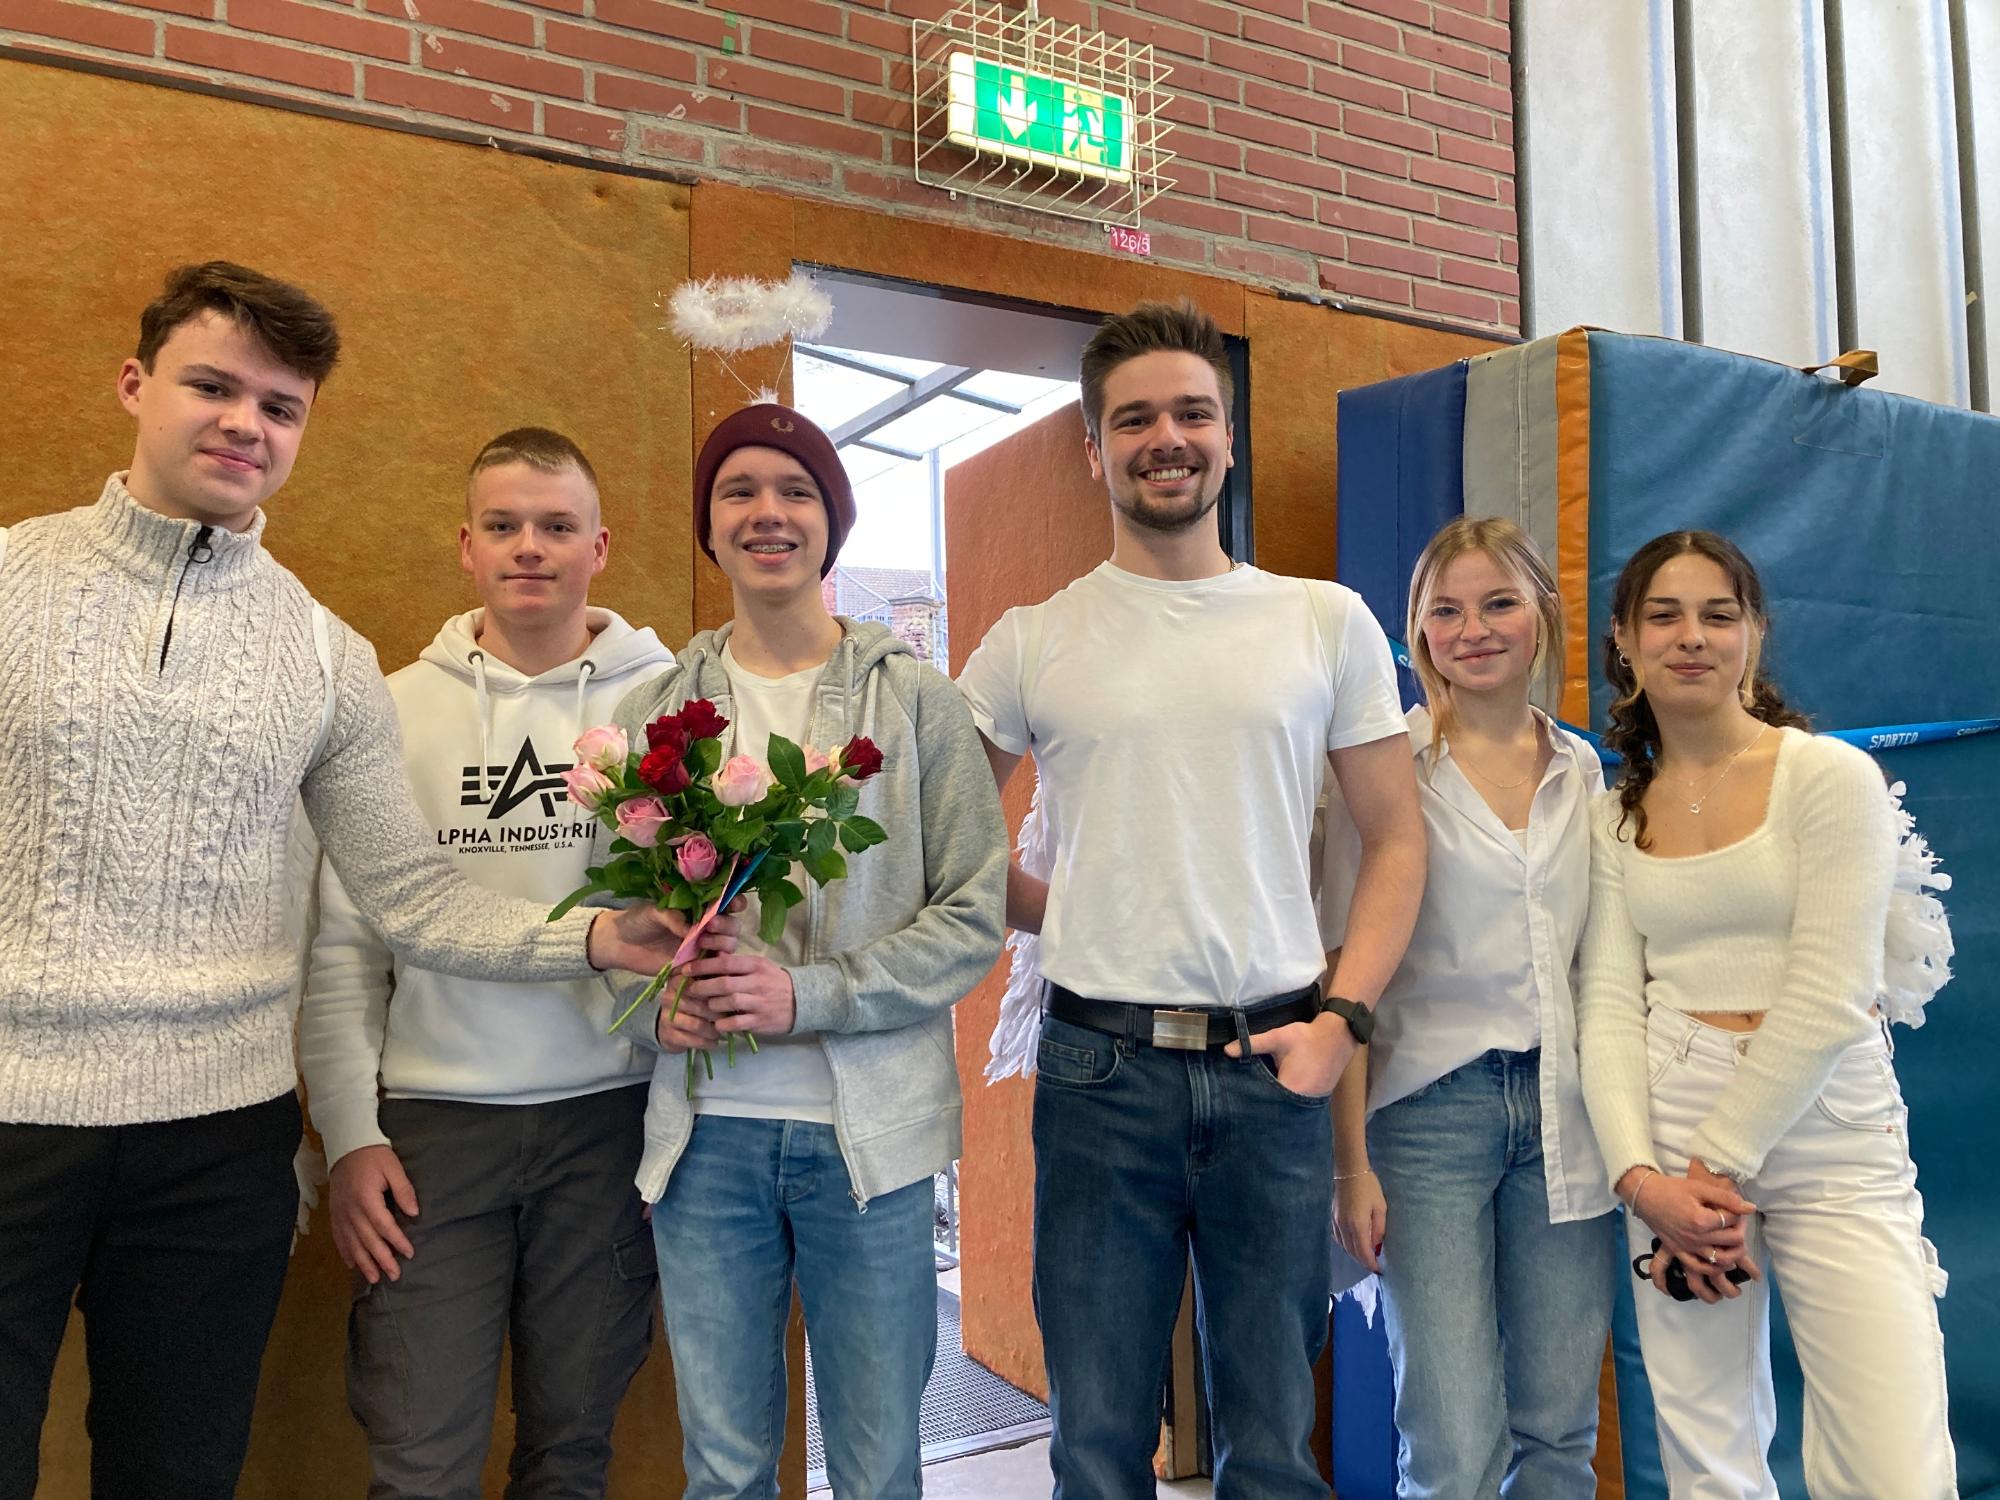 SV-Engel übermitteln Blumengrüße und herzliche Botschaften (c) Bischöfliches Gymnasium St. Ursula Geilenkirchen (Dominik Esser)